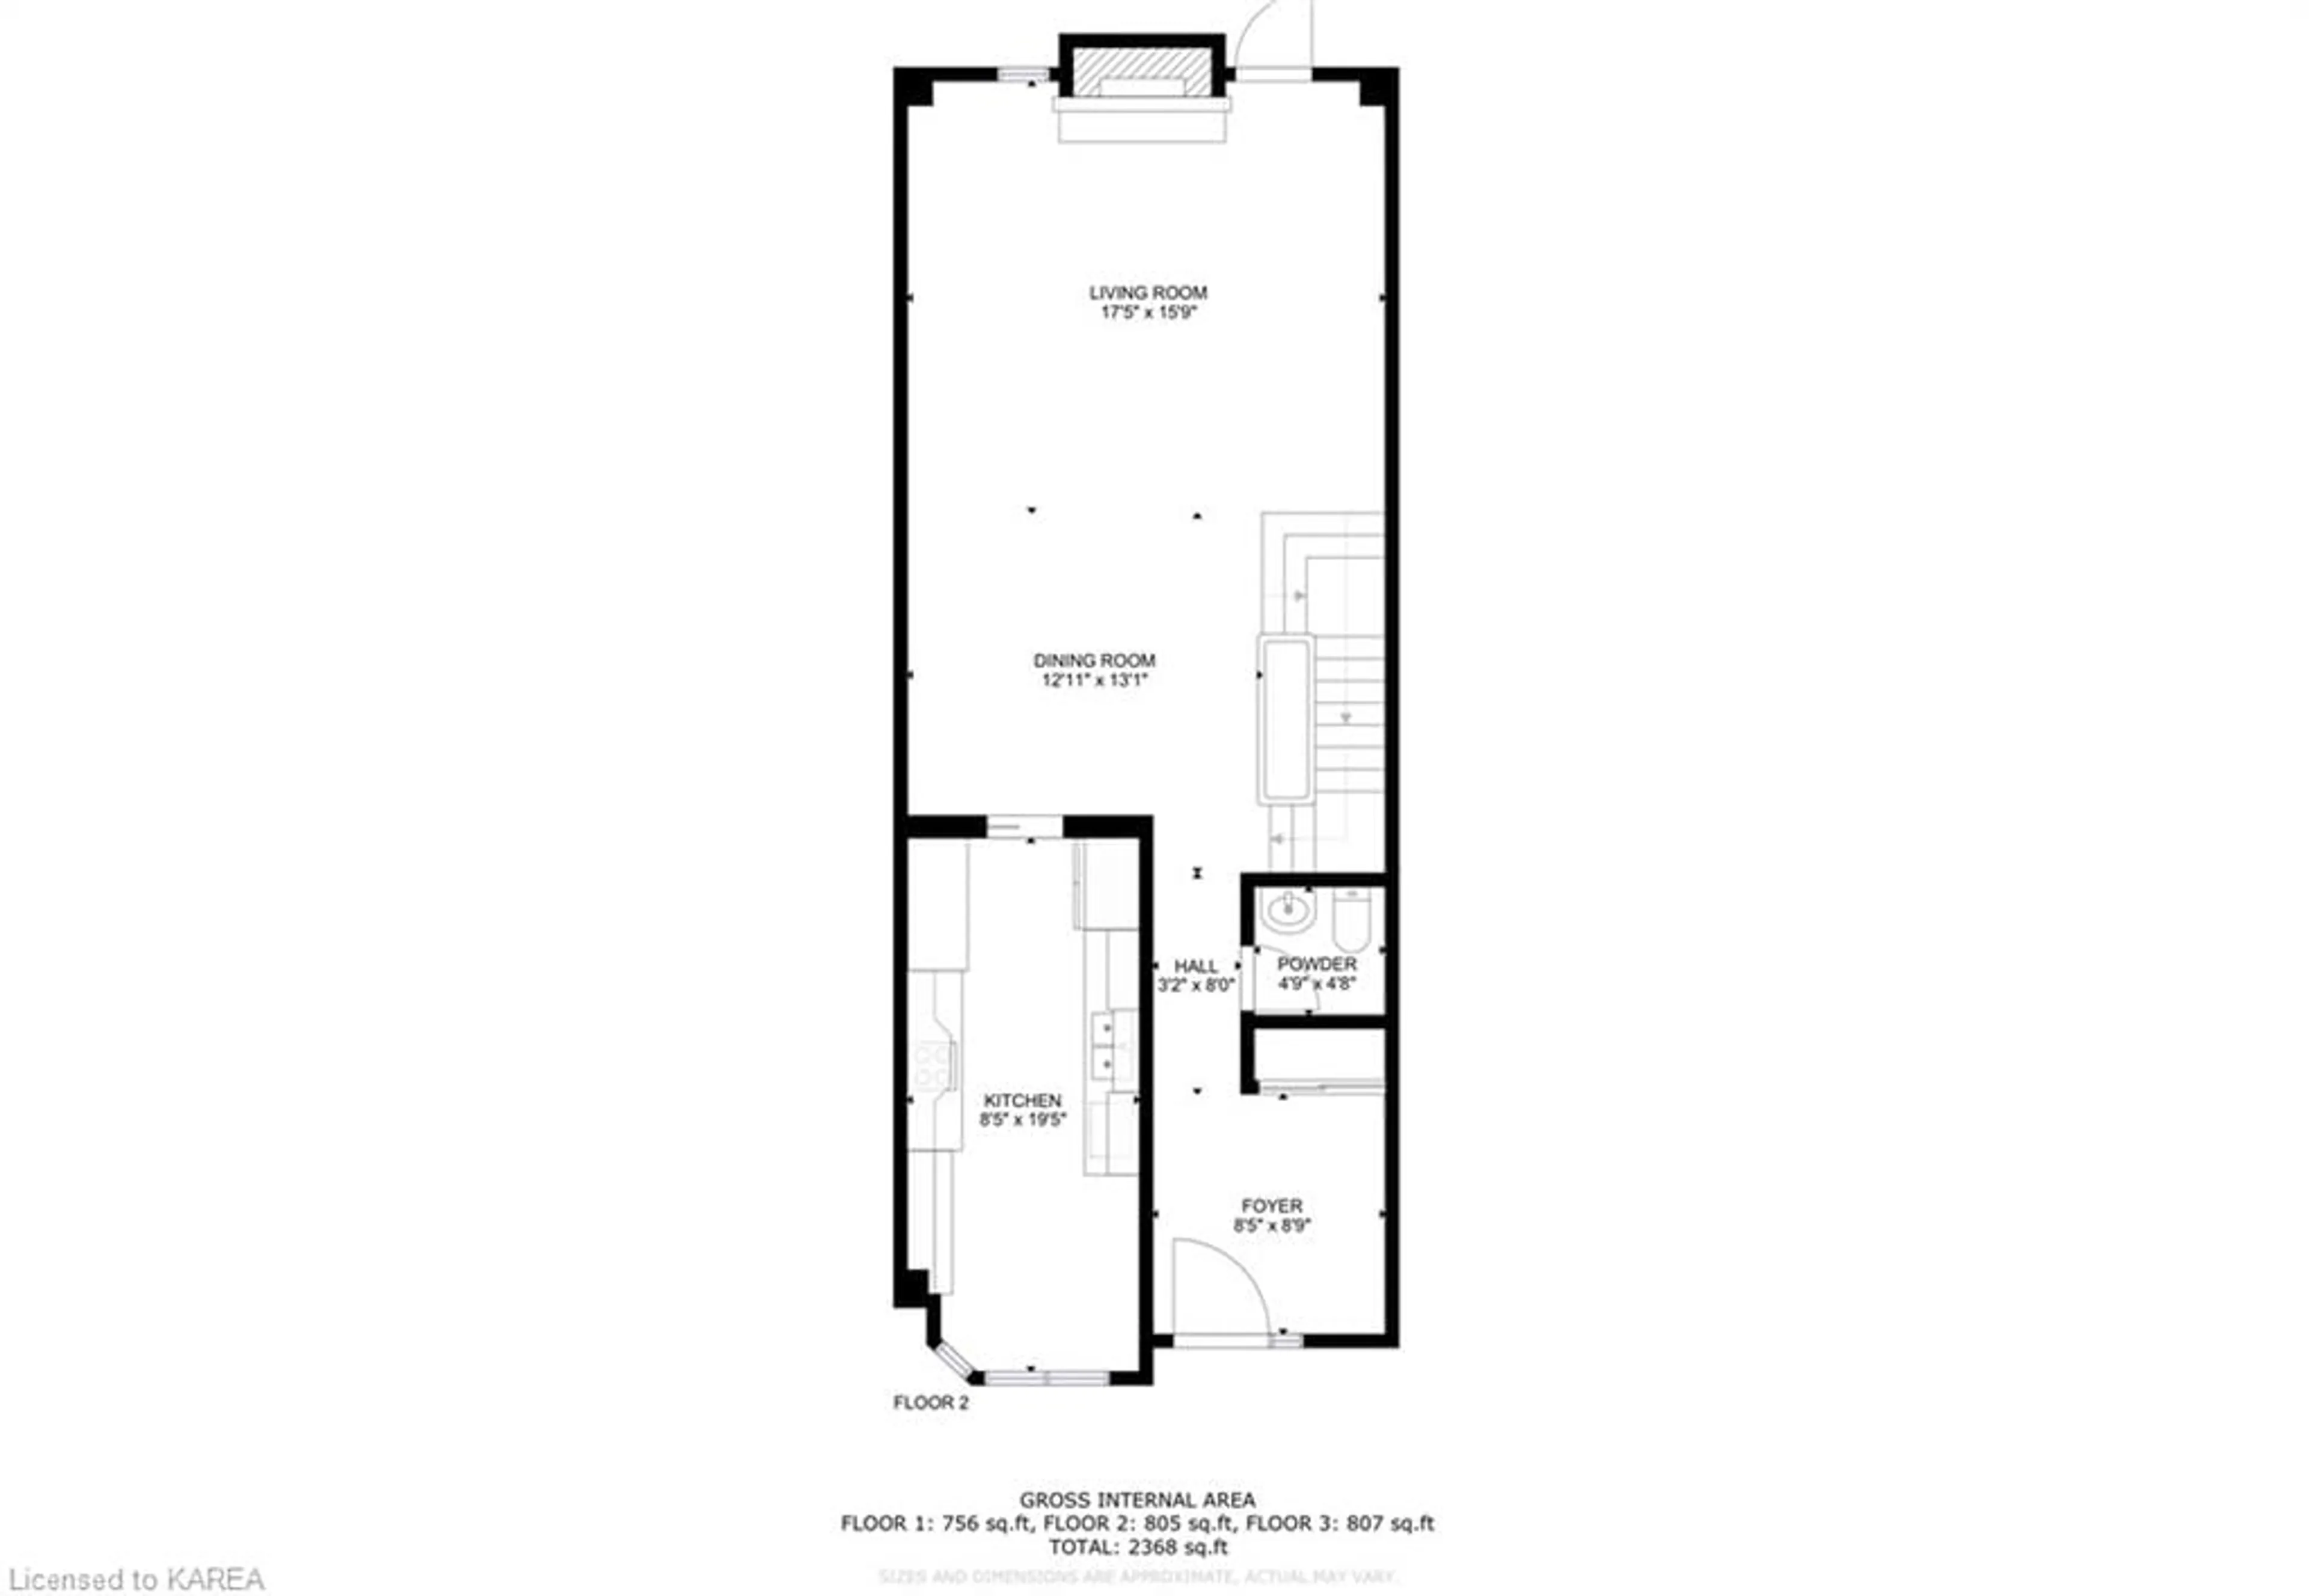 Floor plan for 111 Echo Dr #5, Ottawa Ontario K1S 5K8